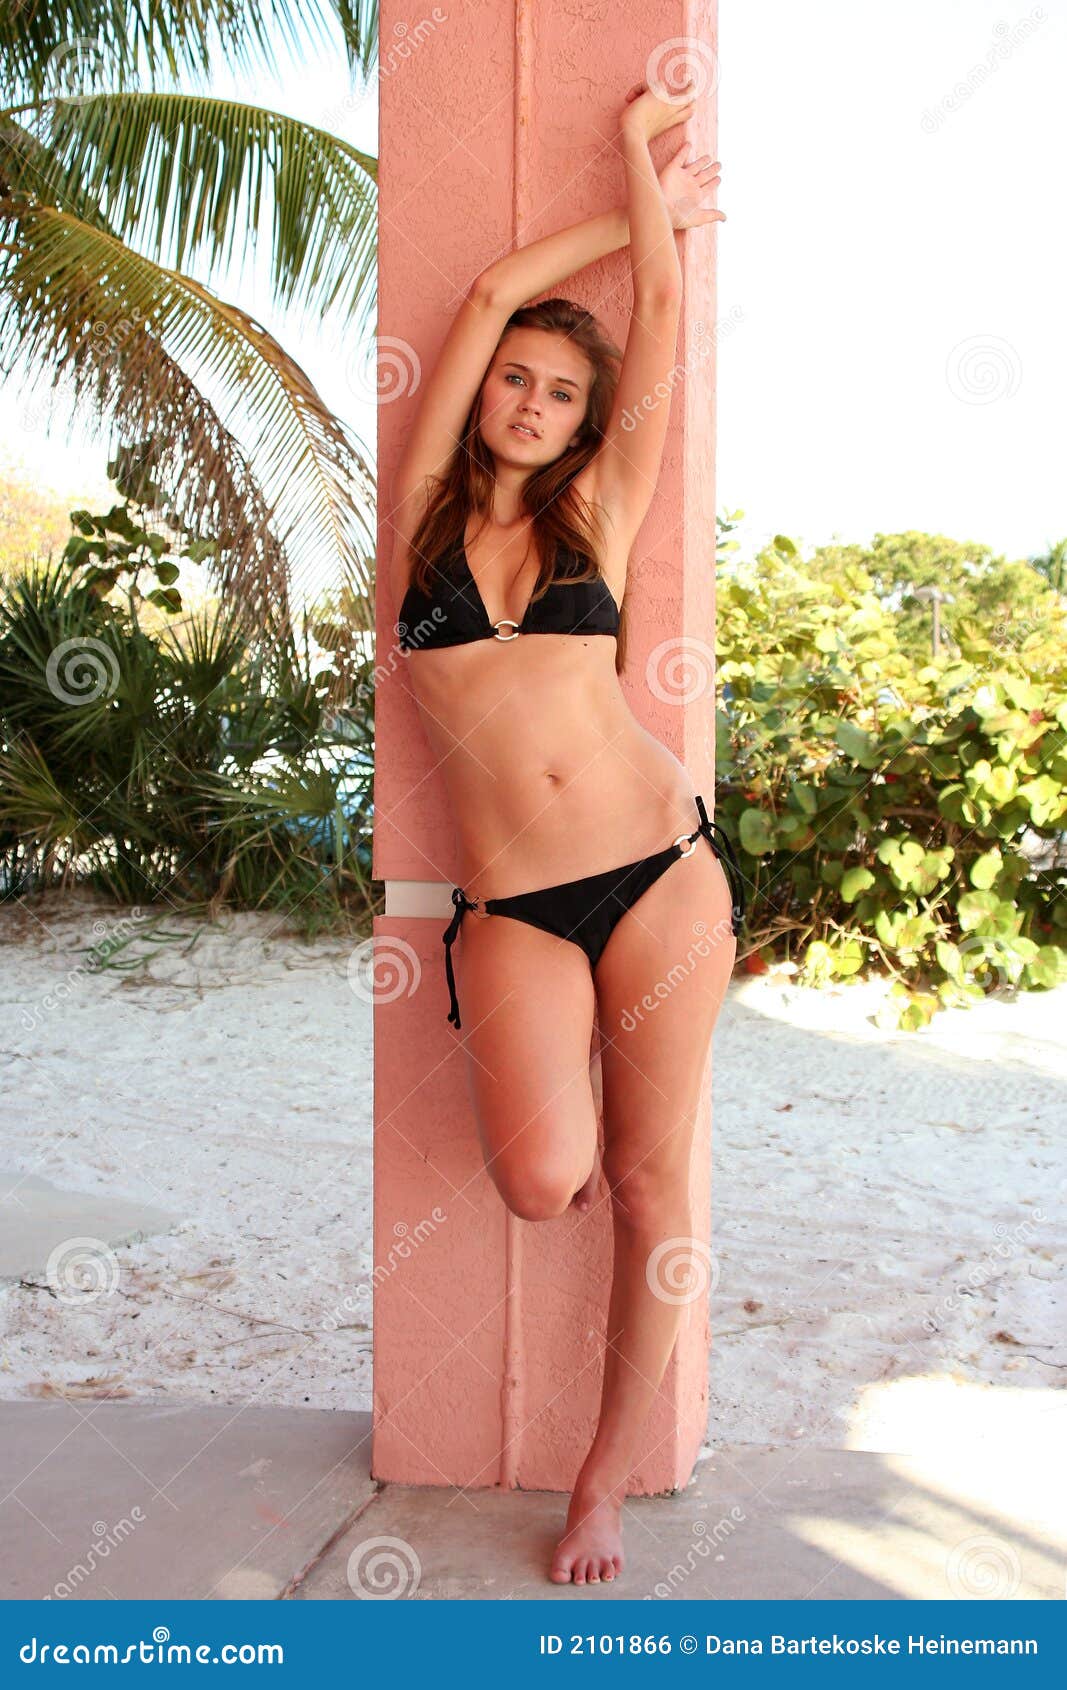 Pics ashley judd bikini Ashley Judd